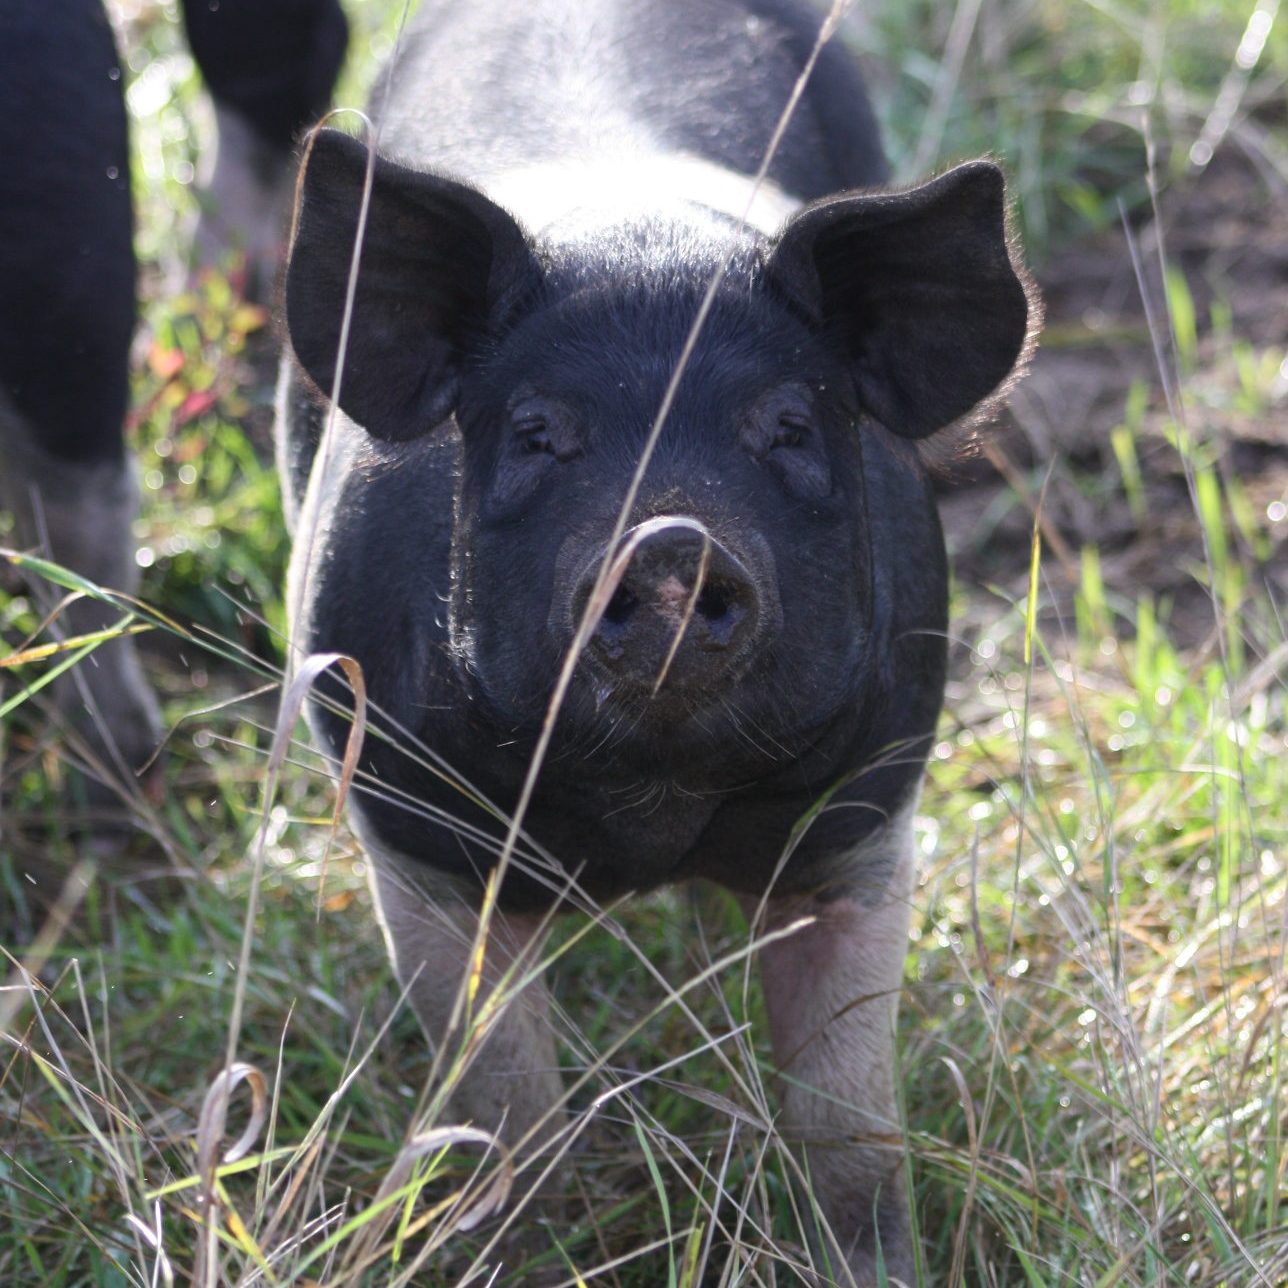 Pig looking at the camera